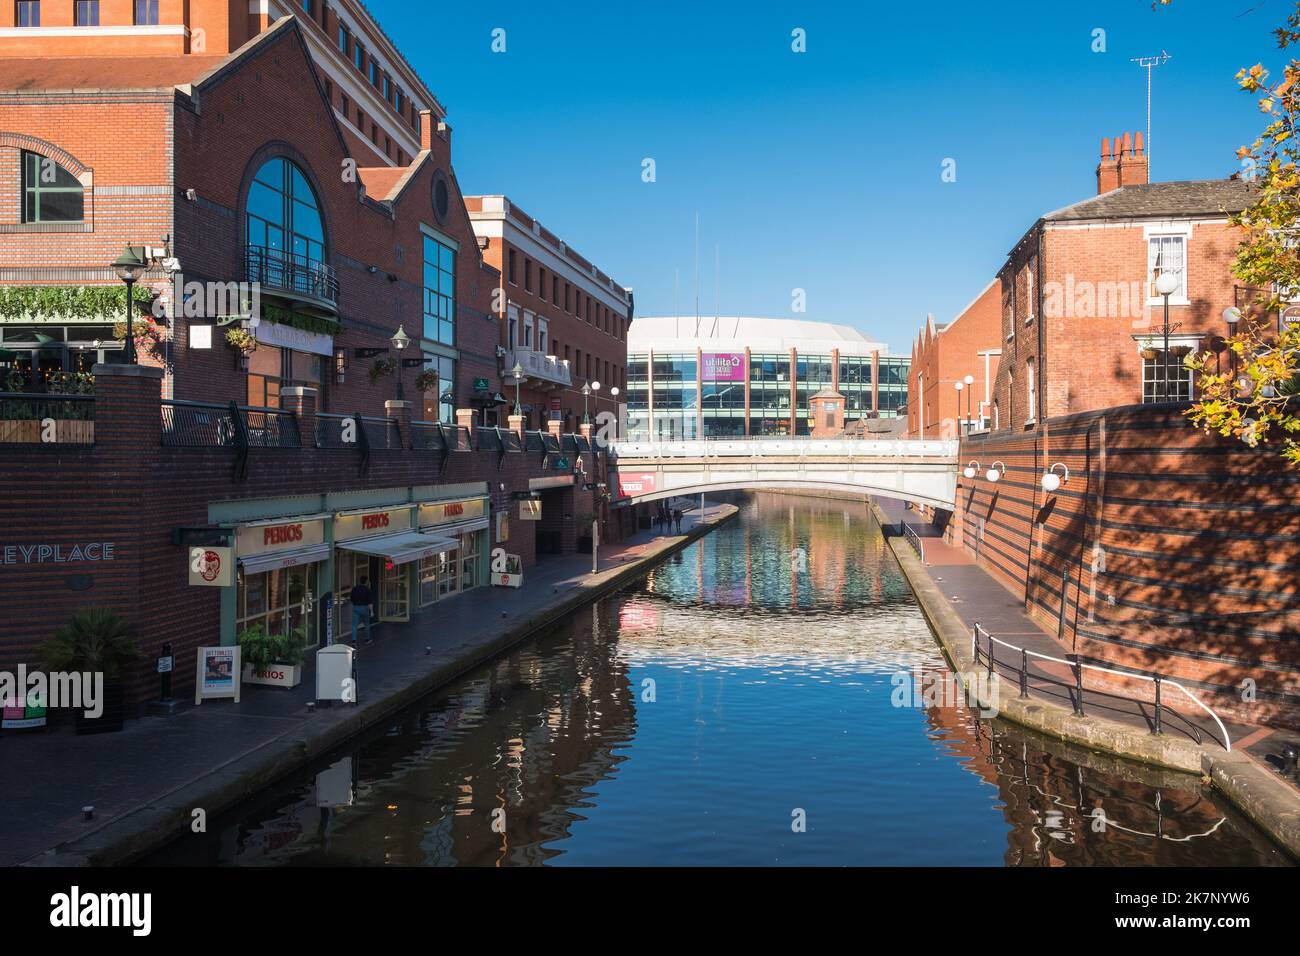 Der Veranstaltungsort der utilita Arena in Birmingham, der am Brindley Place entlang des Kanals zu sehen ist Stockfoto